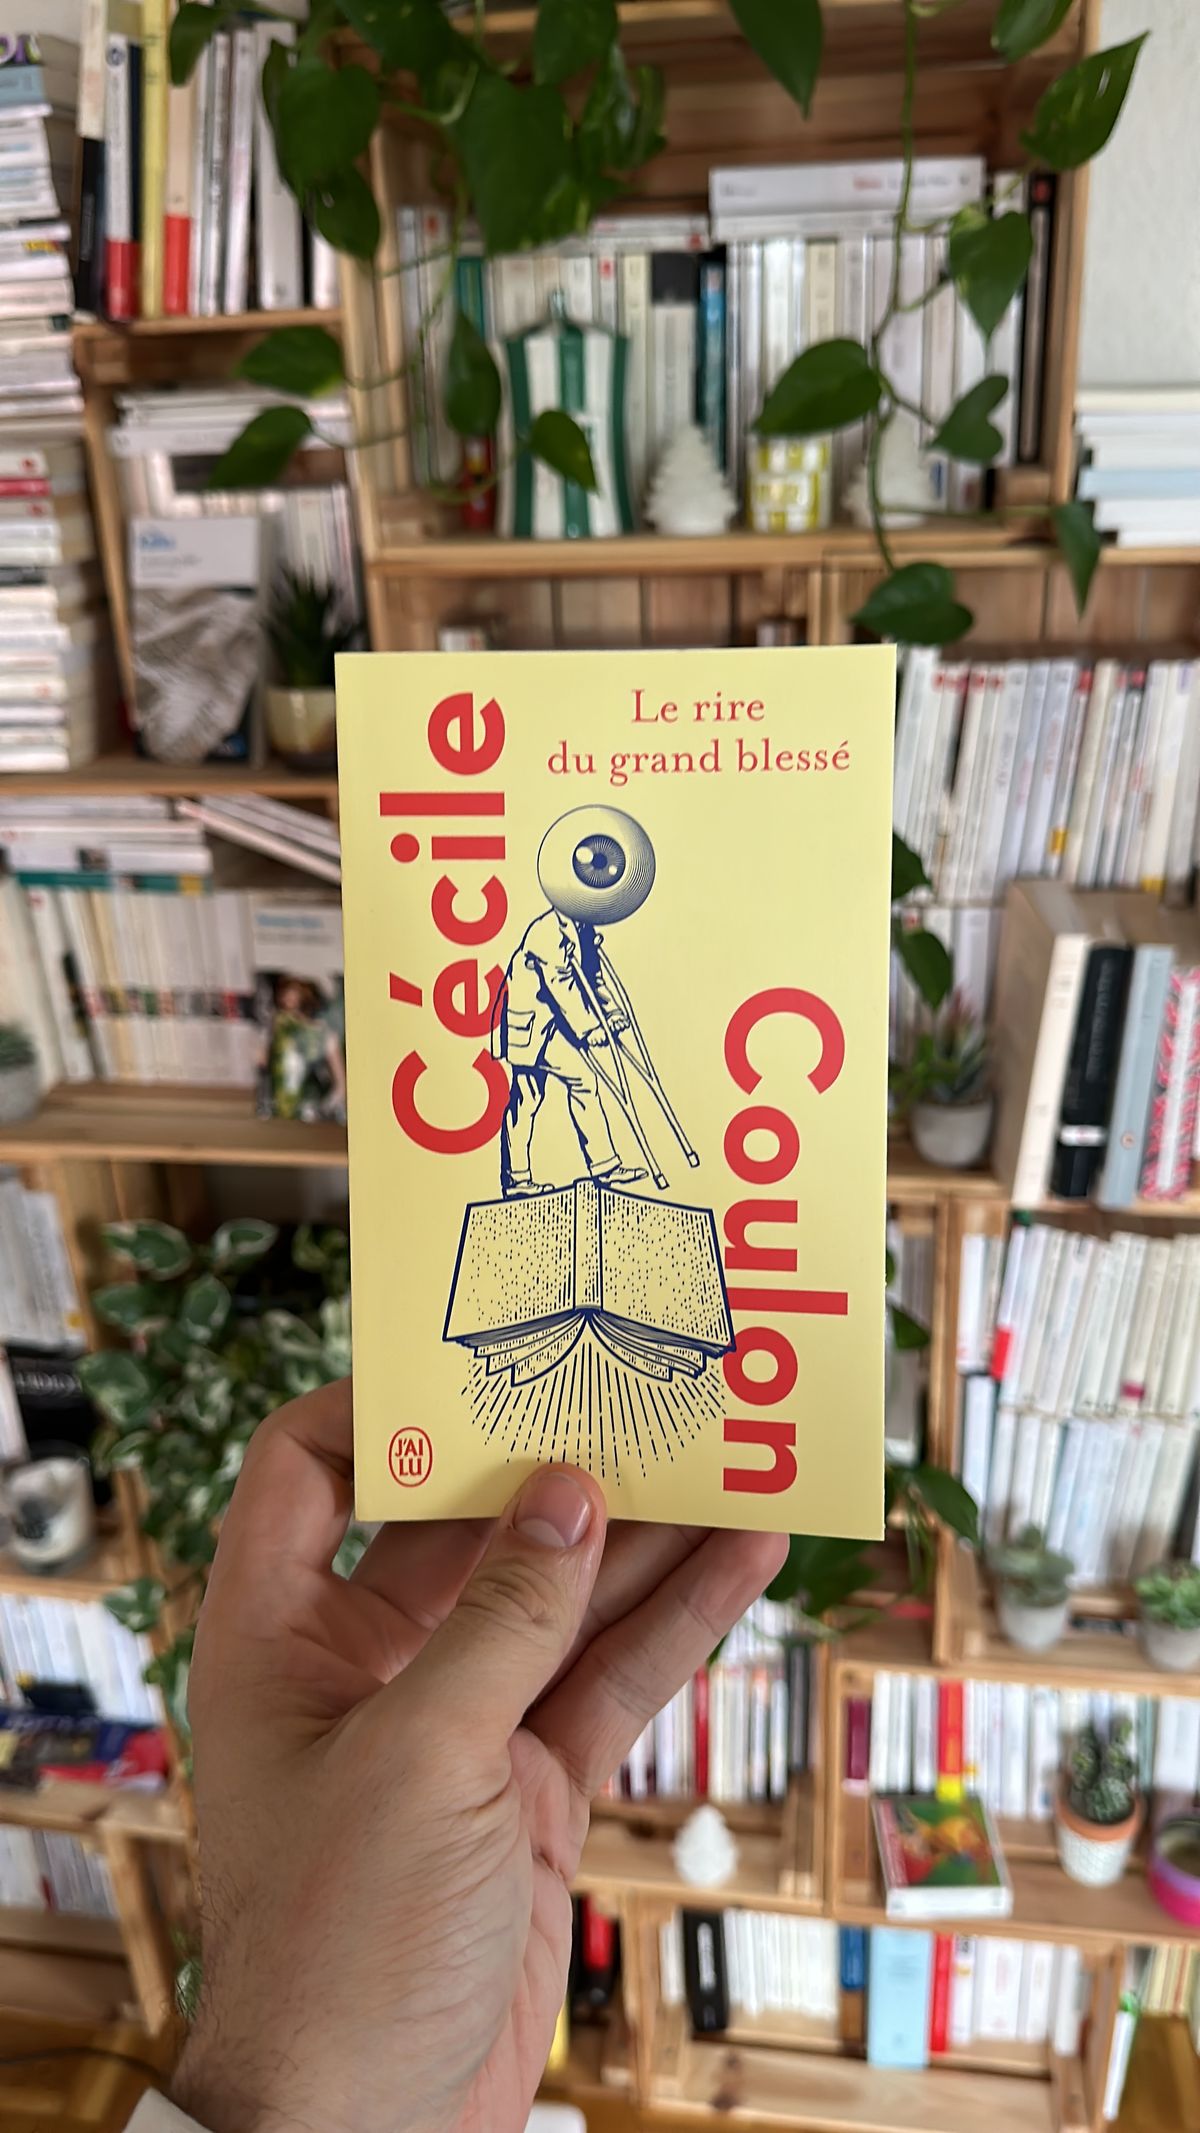 Le rire du grand blessé – Cécile Coulon (2013)